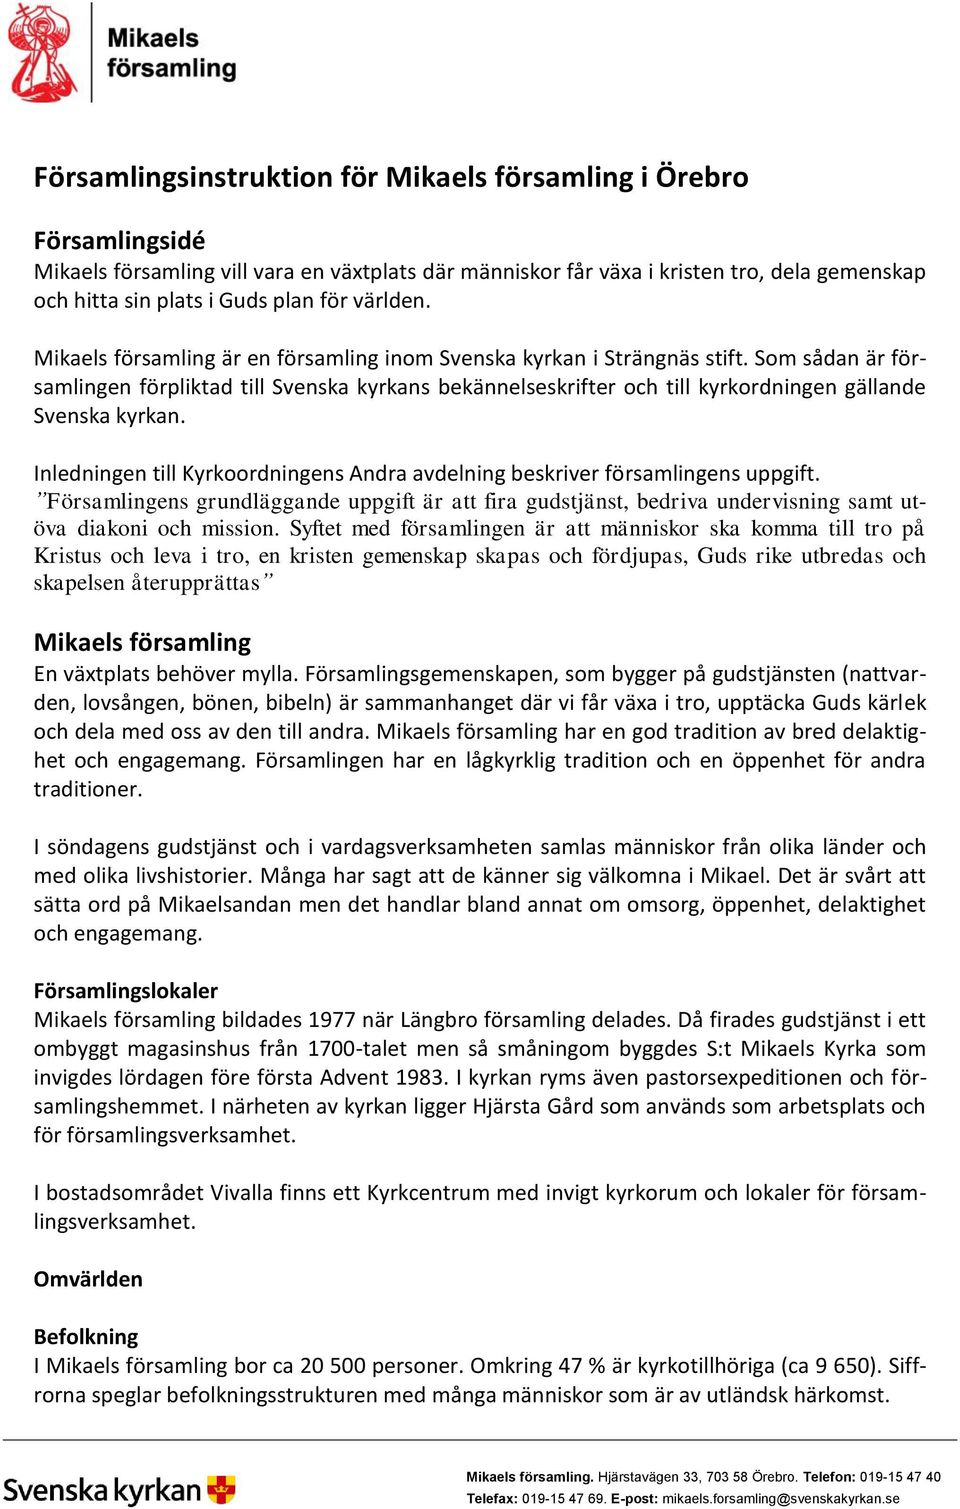 Församlingsinstruktion för Mikaels församling i Örebro - PDF Free Download